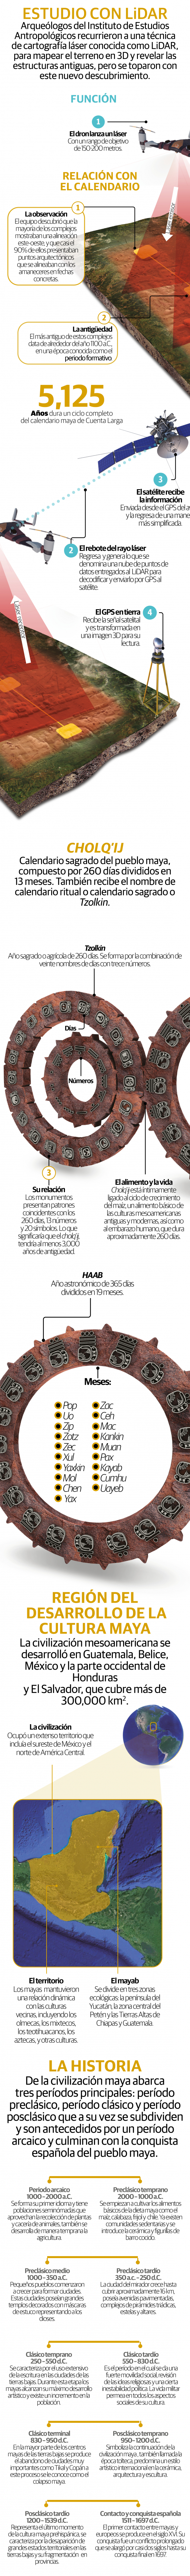 Estudio con LiDAR descubre que el calendario maya podría tener más de 3,000 años de antigüedad